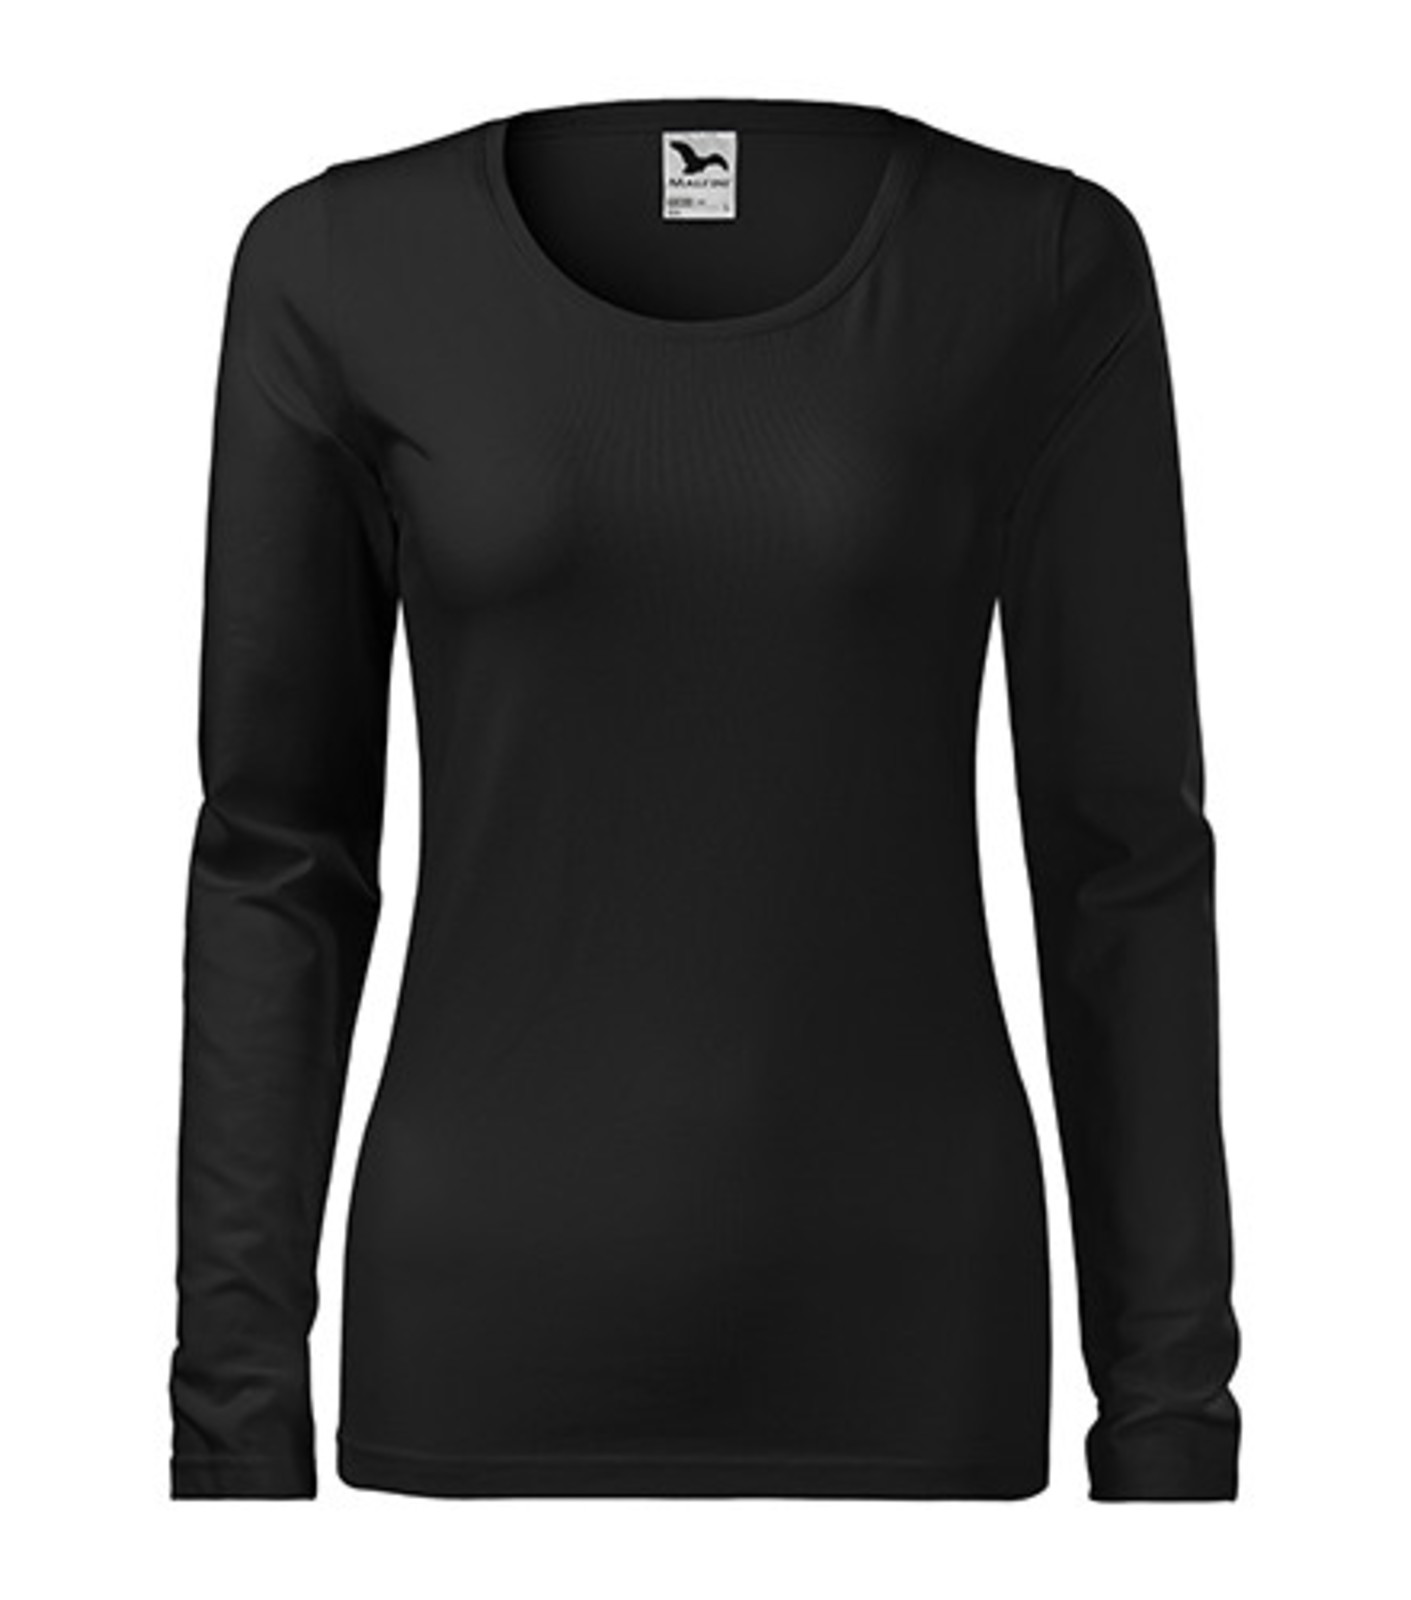 Dámske tričko s dlhým rukávom Adler Slim 139 - veľkosť: M, farba: čierna